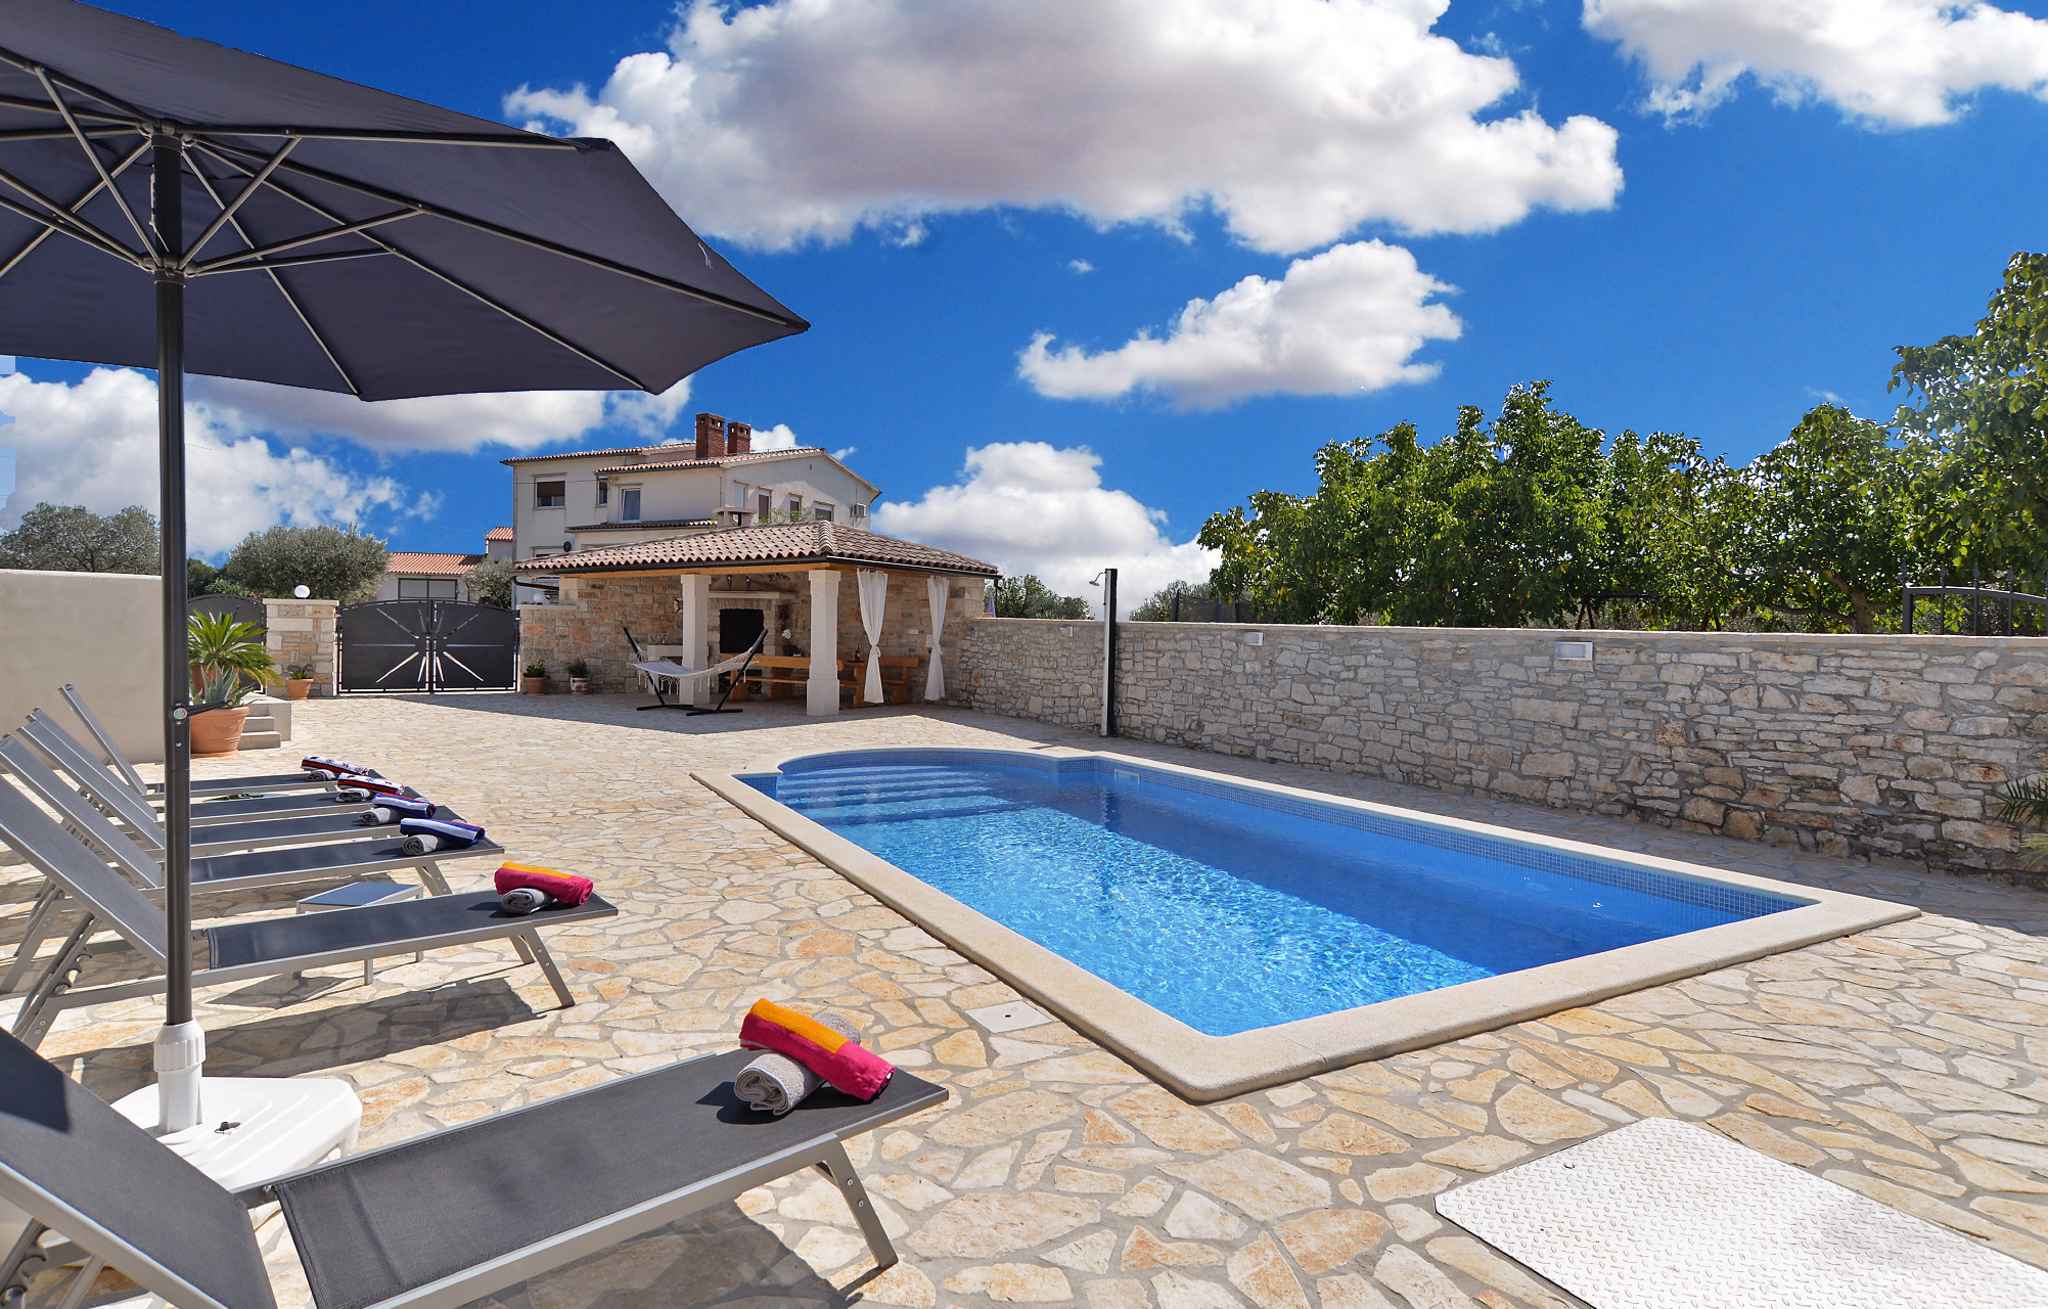 Ferienhaus mit Swimmingpool und Terrasse mit Grill  in Istrien